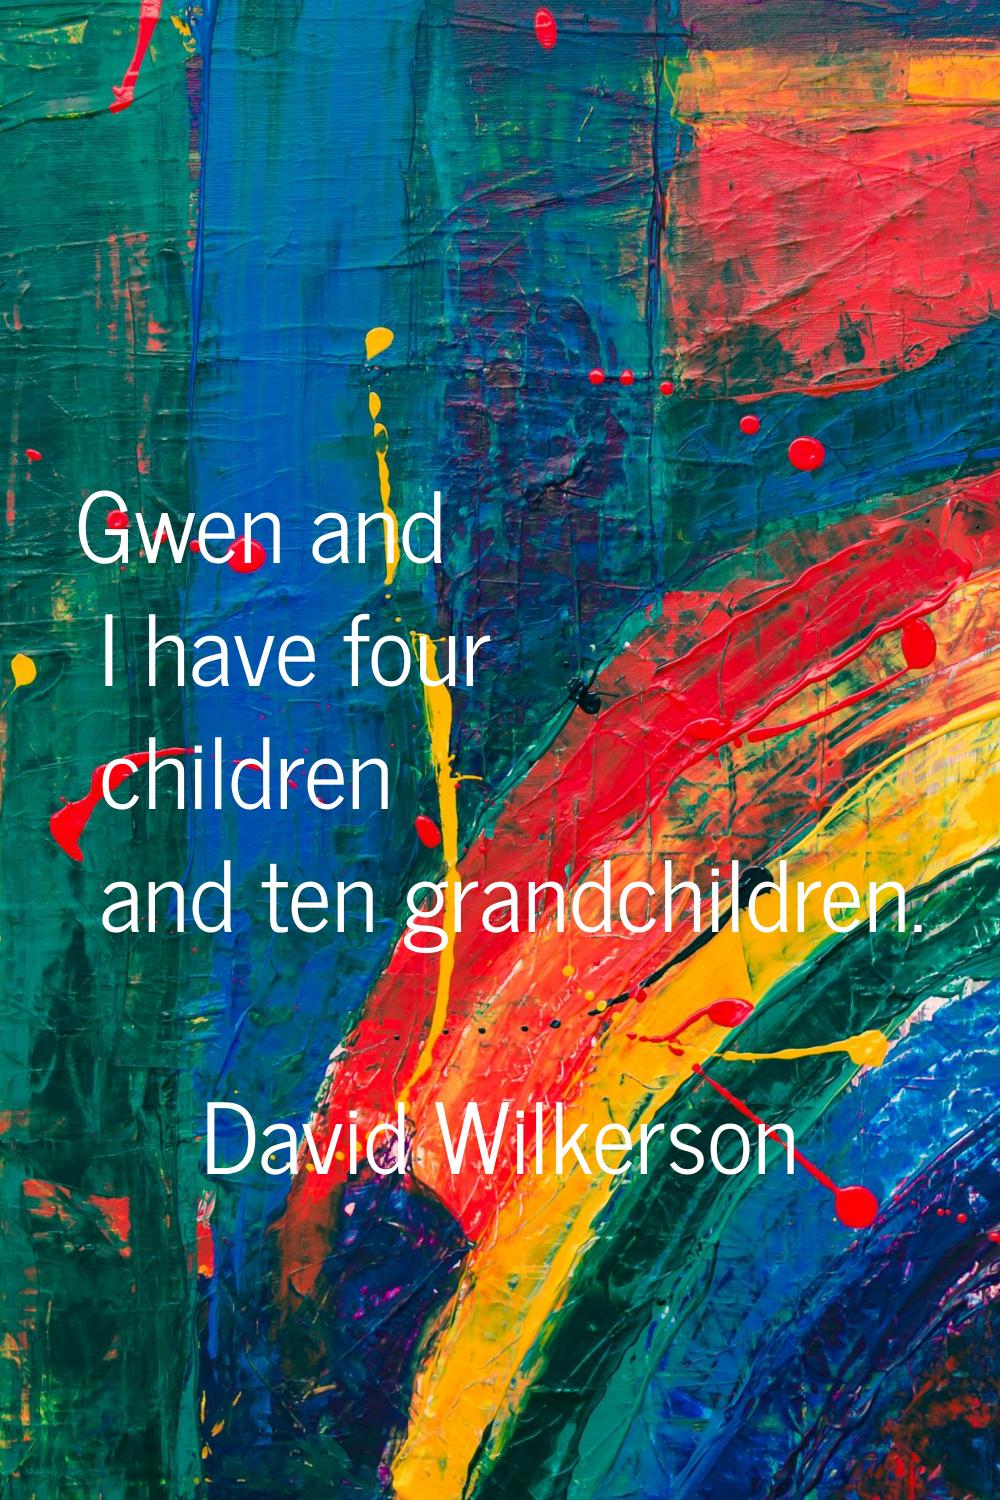 Gwen and I have four children and ten grandchildren.